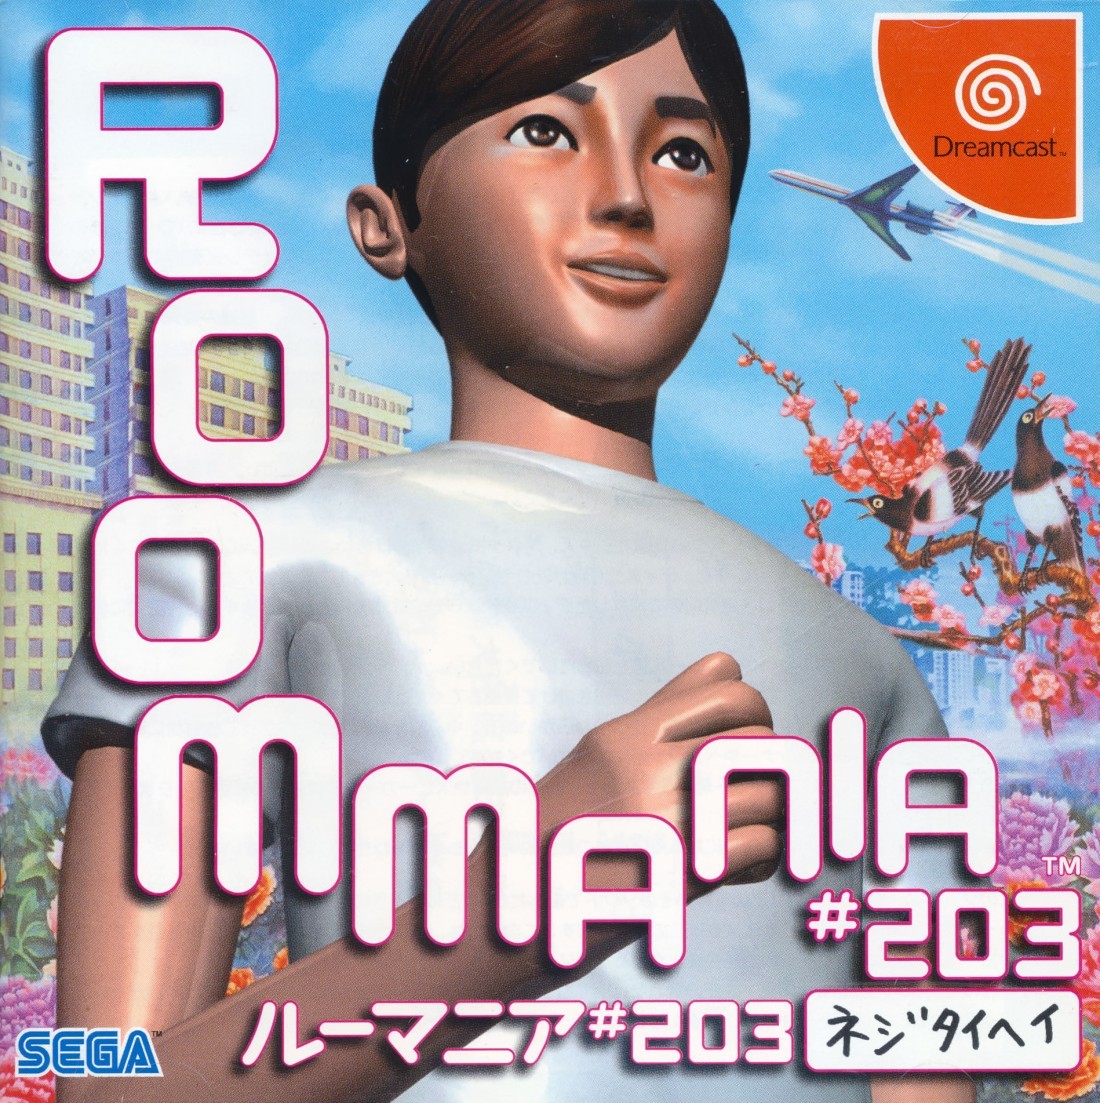 Capa do jogo Roommania #203